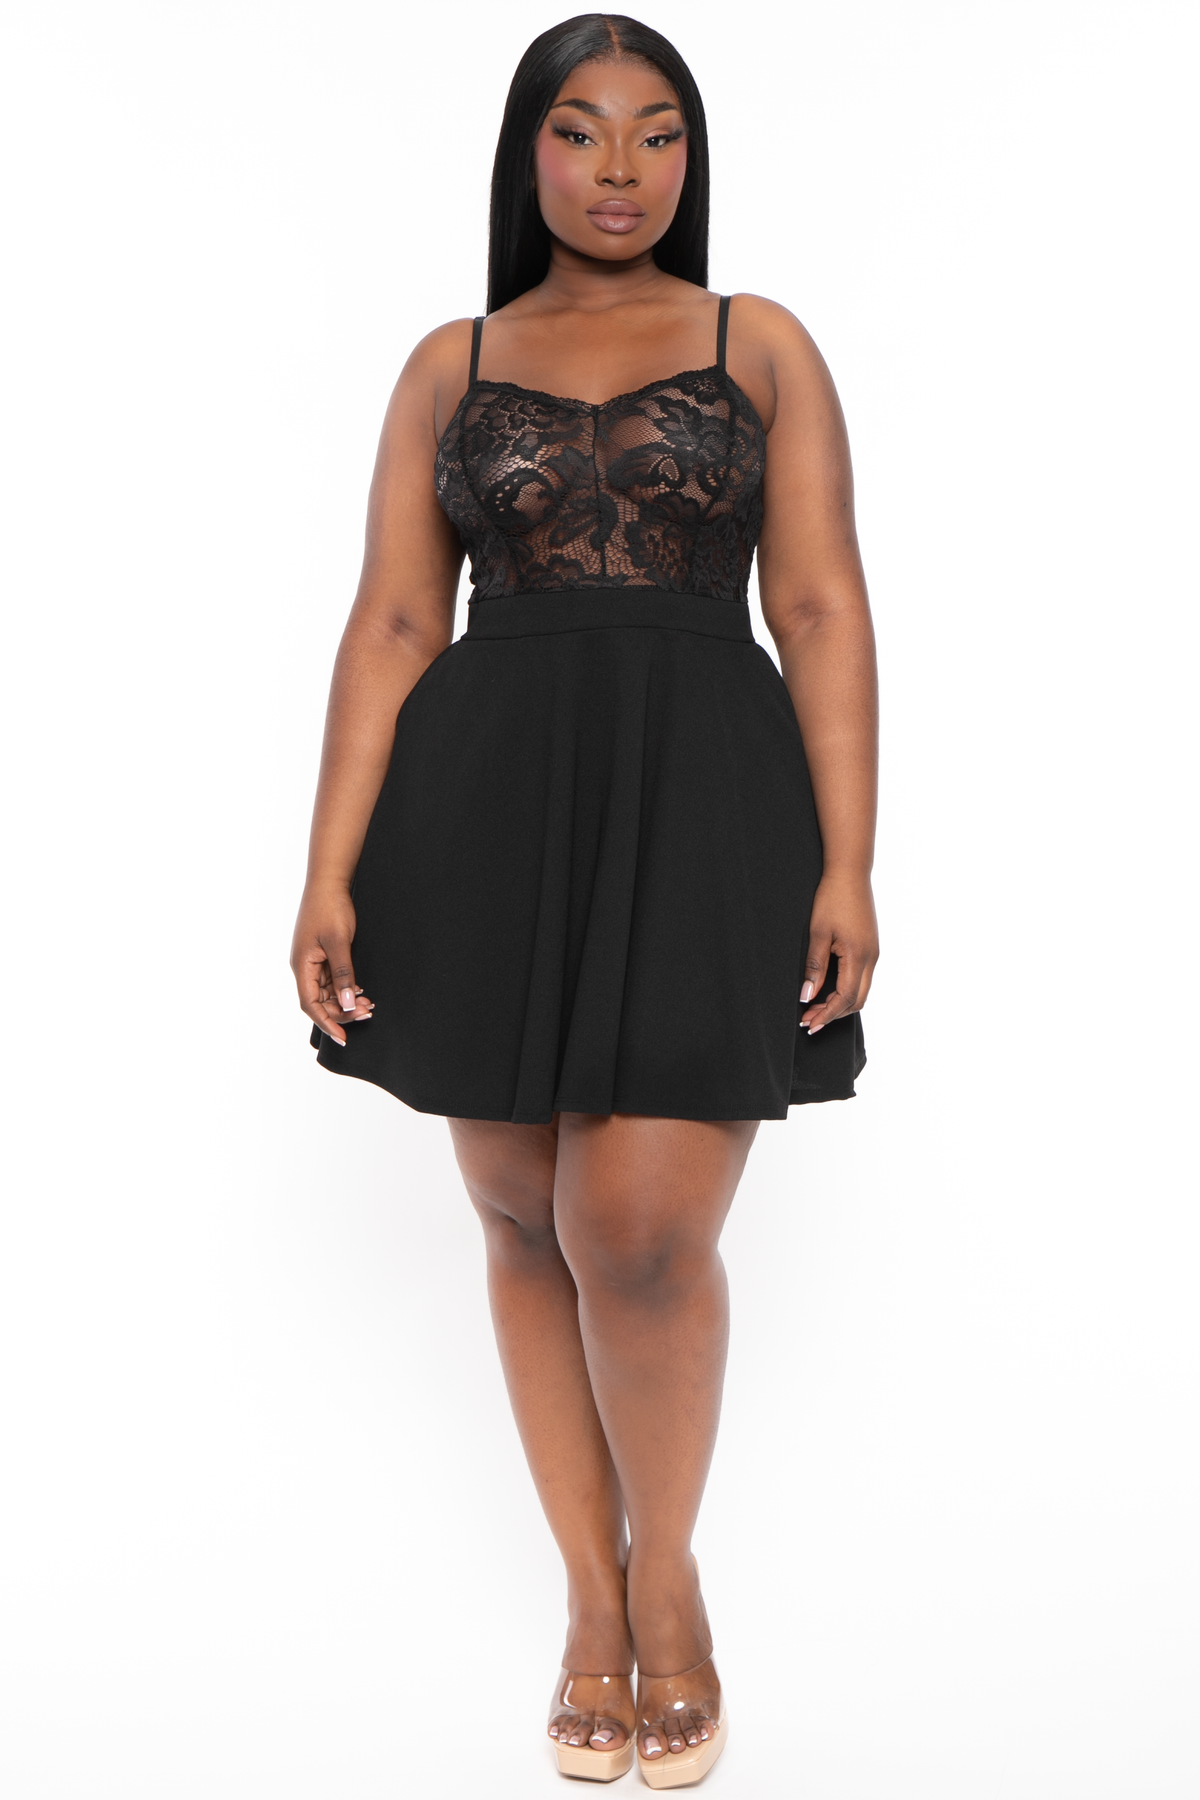 Plus Size Top Dress - Black Curvy Sense